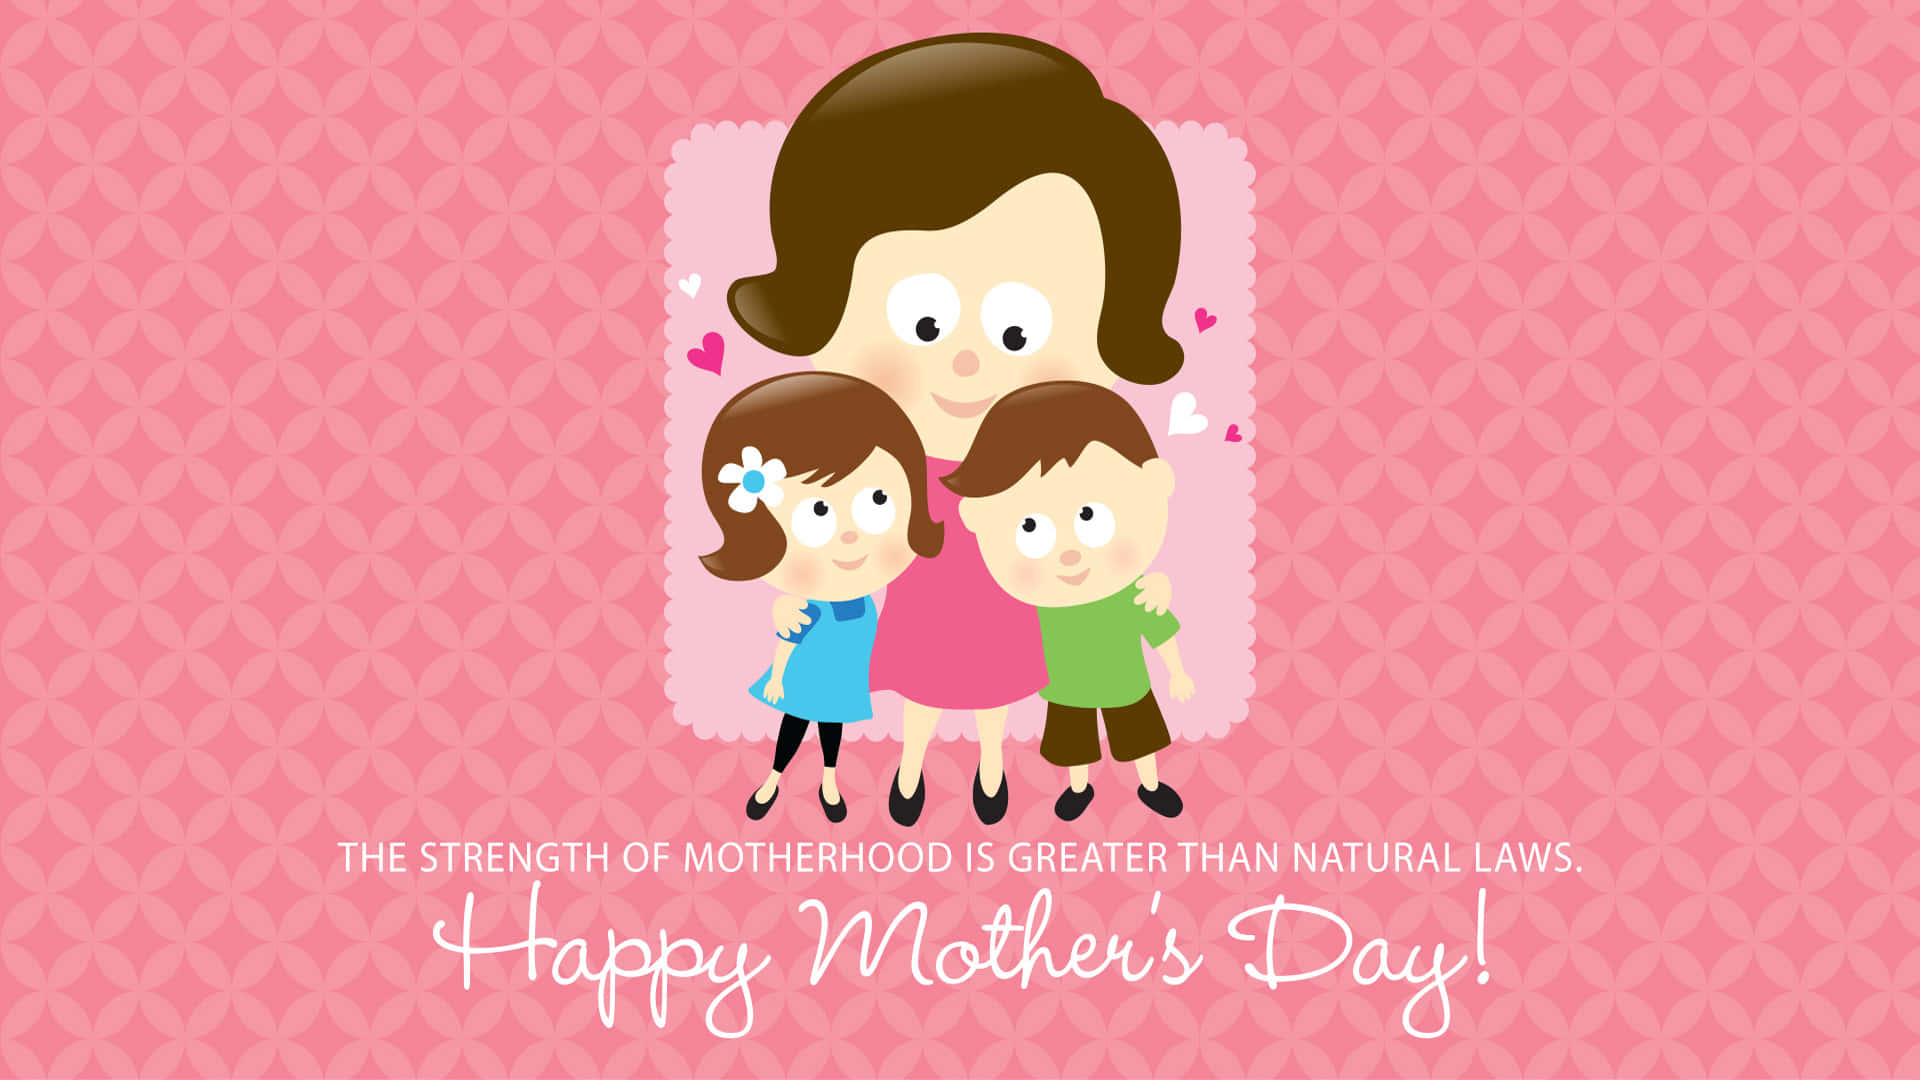 Feieredie Fantastischen Mütter In Deinem Leben An Diesem #happymothersday. Wallpaper